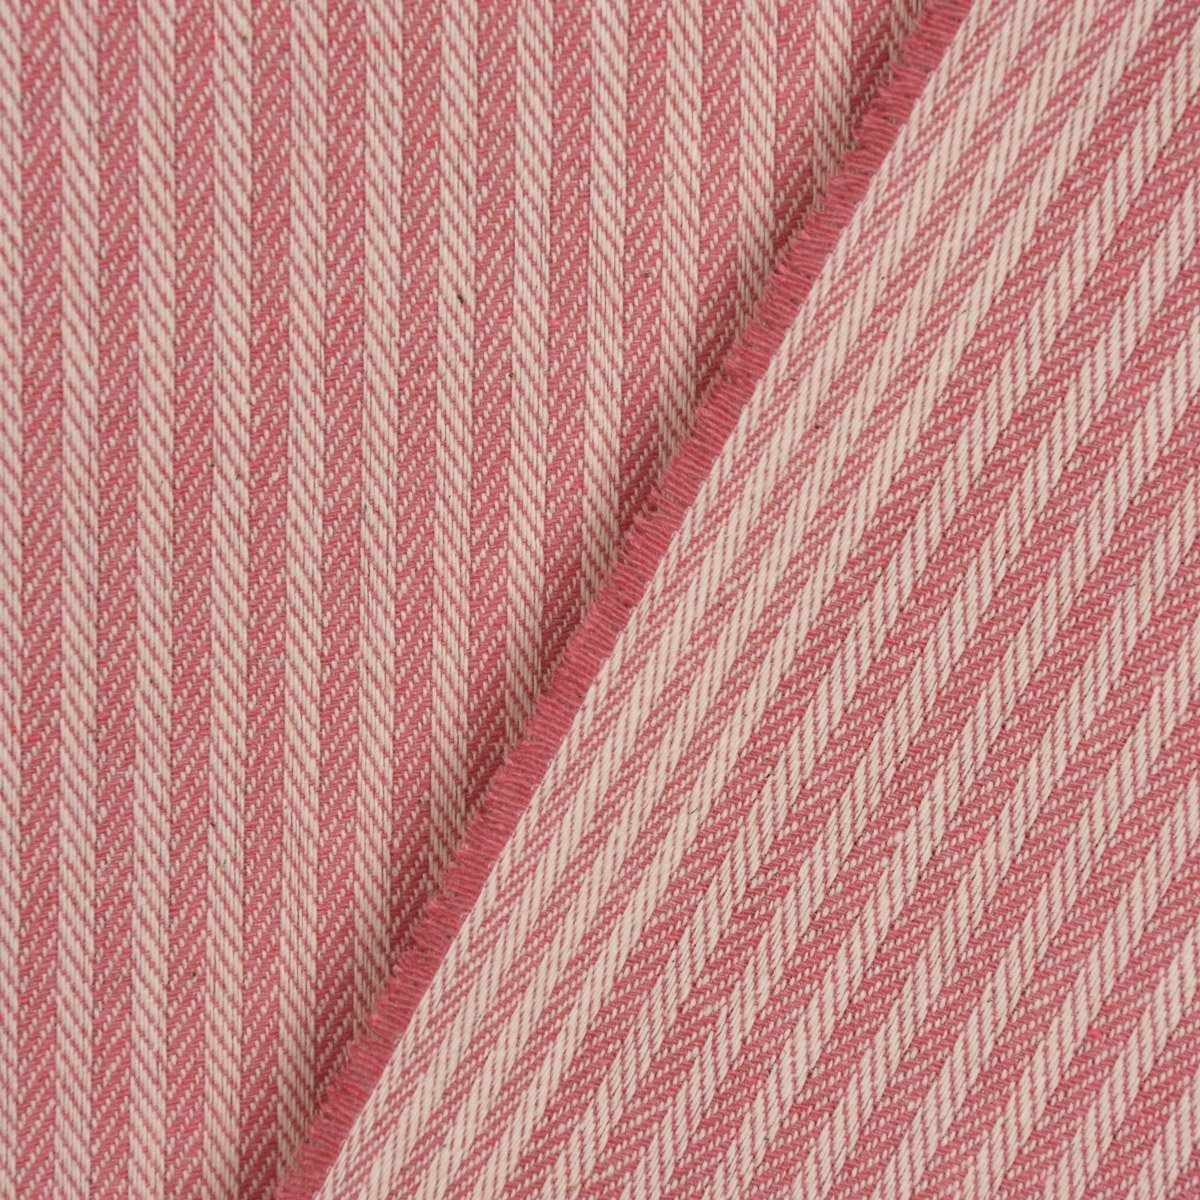 SCHÖNER LEBEN. Tischdecke SCHÖNER rosa handmade Tischdecke Größen, verschiedene 3mm creme LEBEN. Streifen